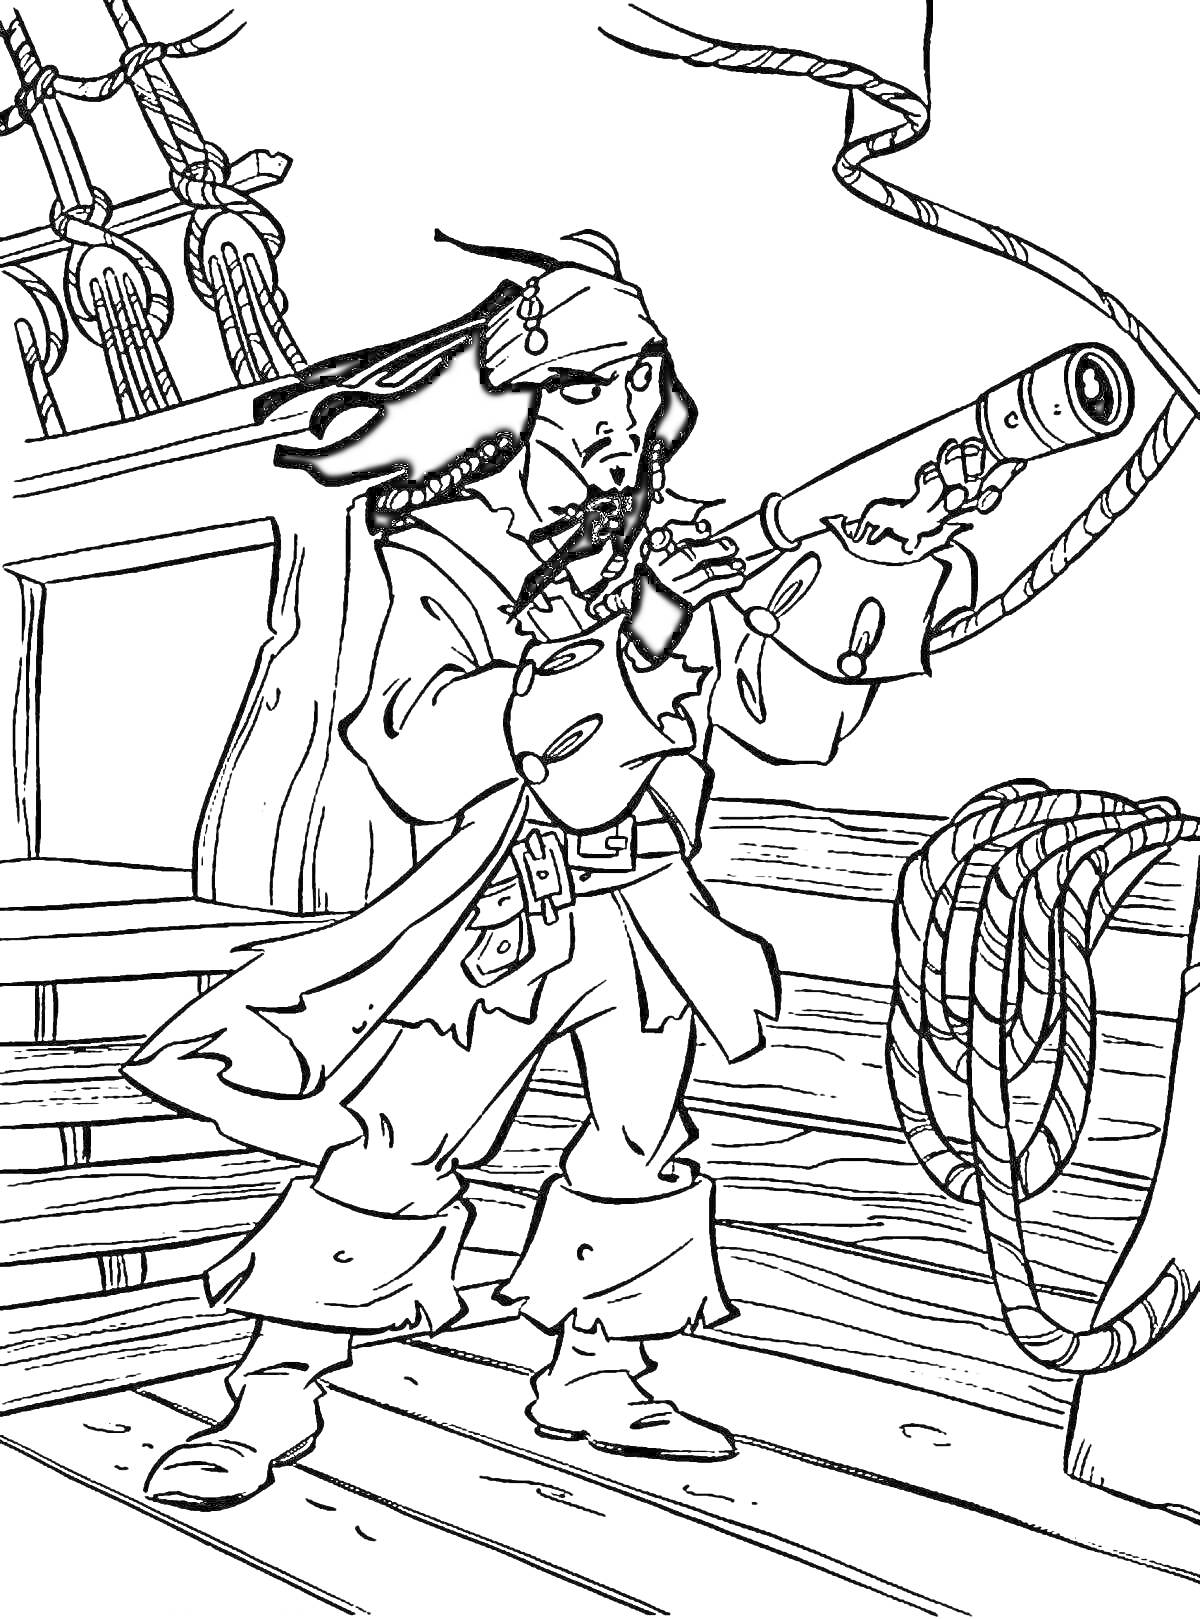 Раскраска Джек Воробей на палубе корабля с подзорной трубой в руке, веревки и мачта на заднем плане